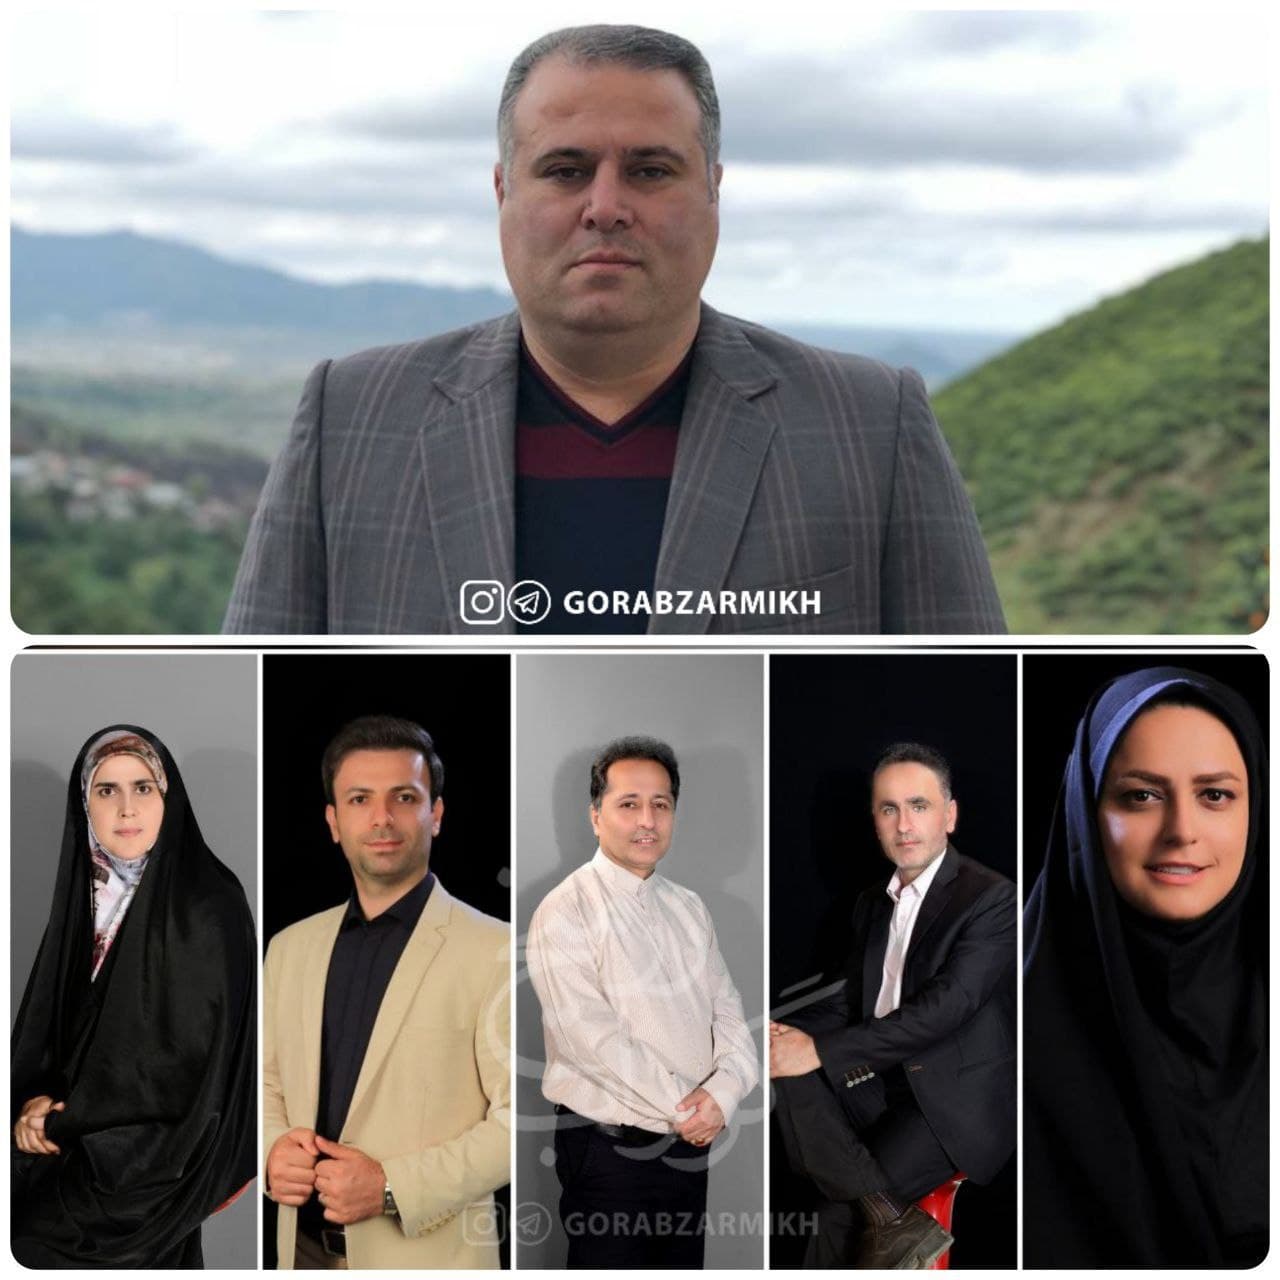 شهردار گوراب زرمیخ انتخاب شد